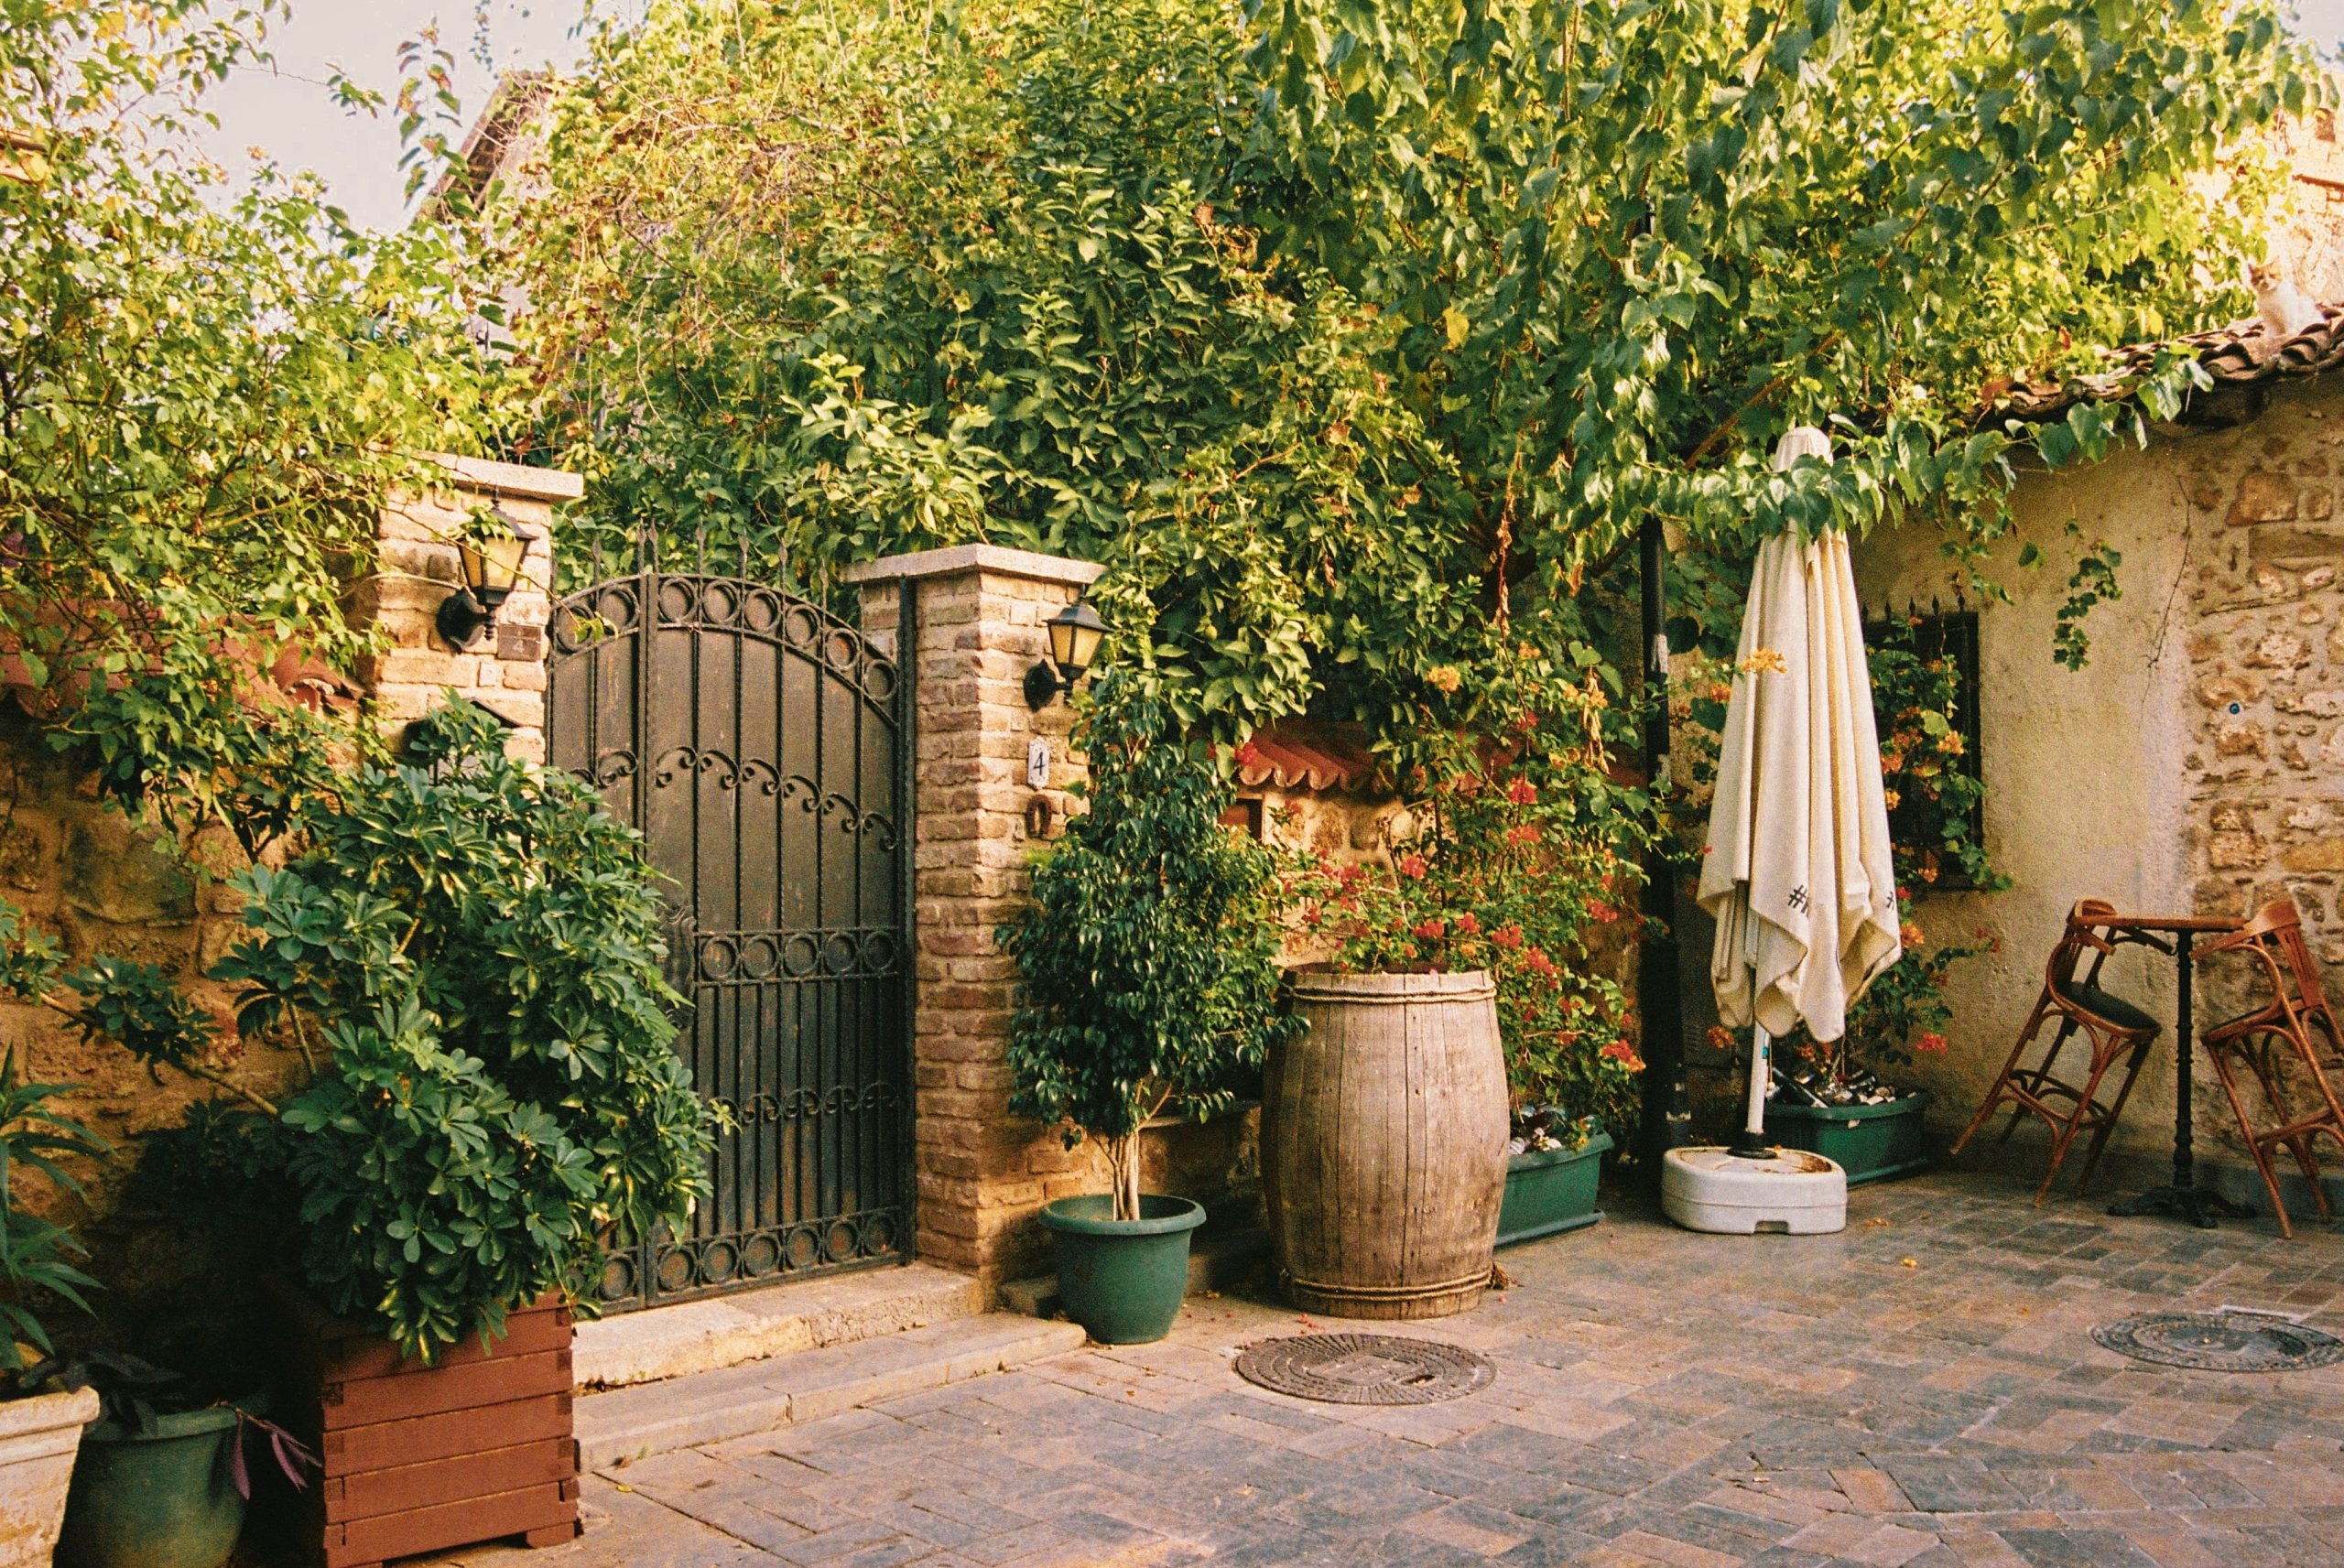 Mulcz dekoracyjny – prosty sposób na zmianę wyglądu ogrodu bez dużych kosztów?